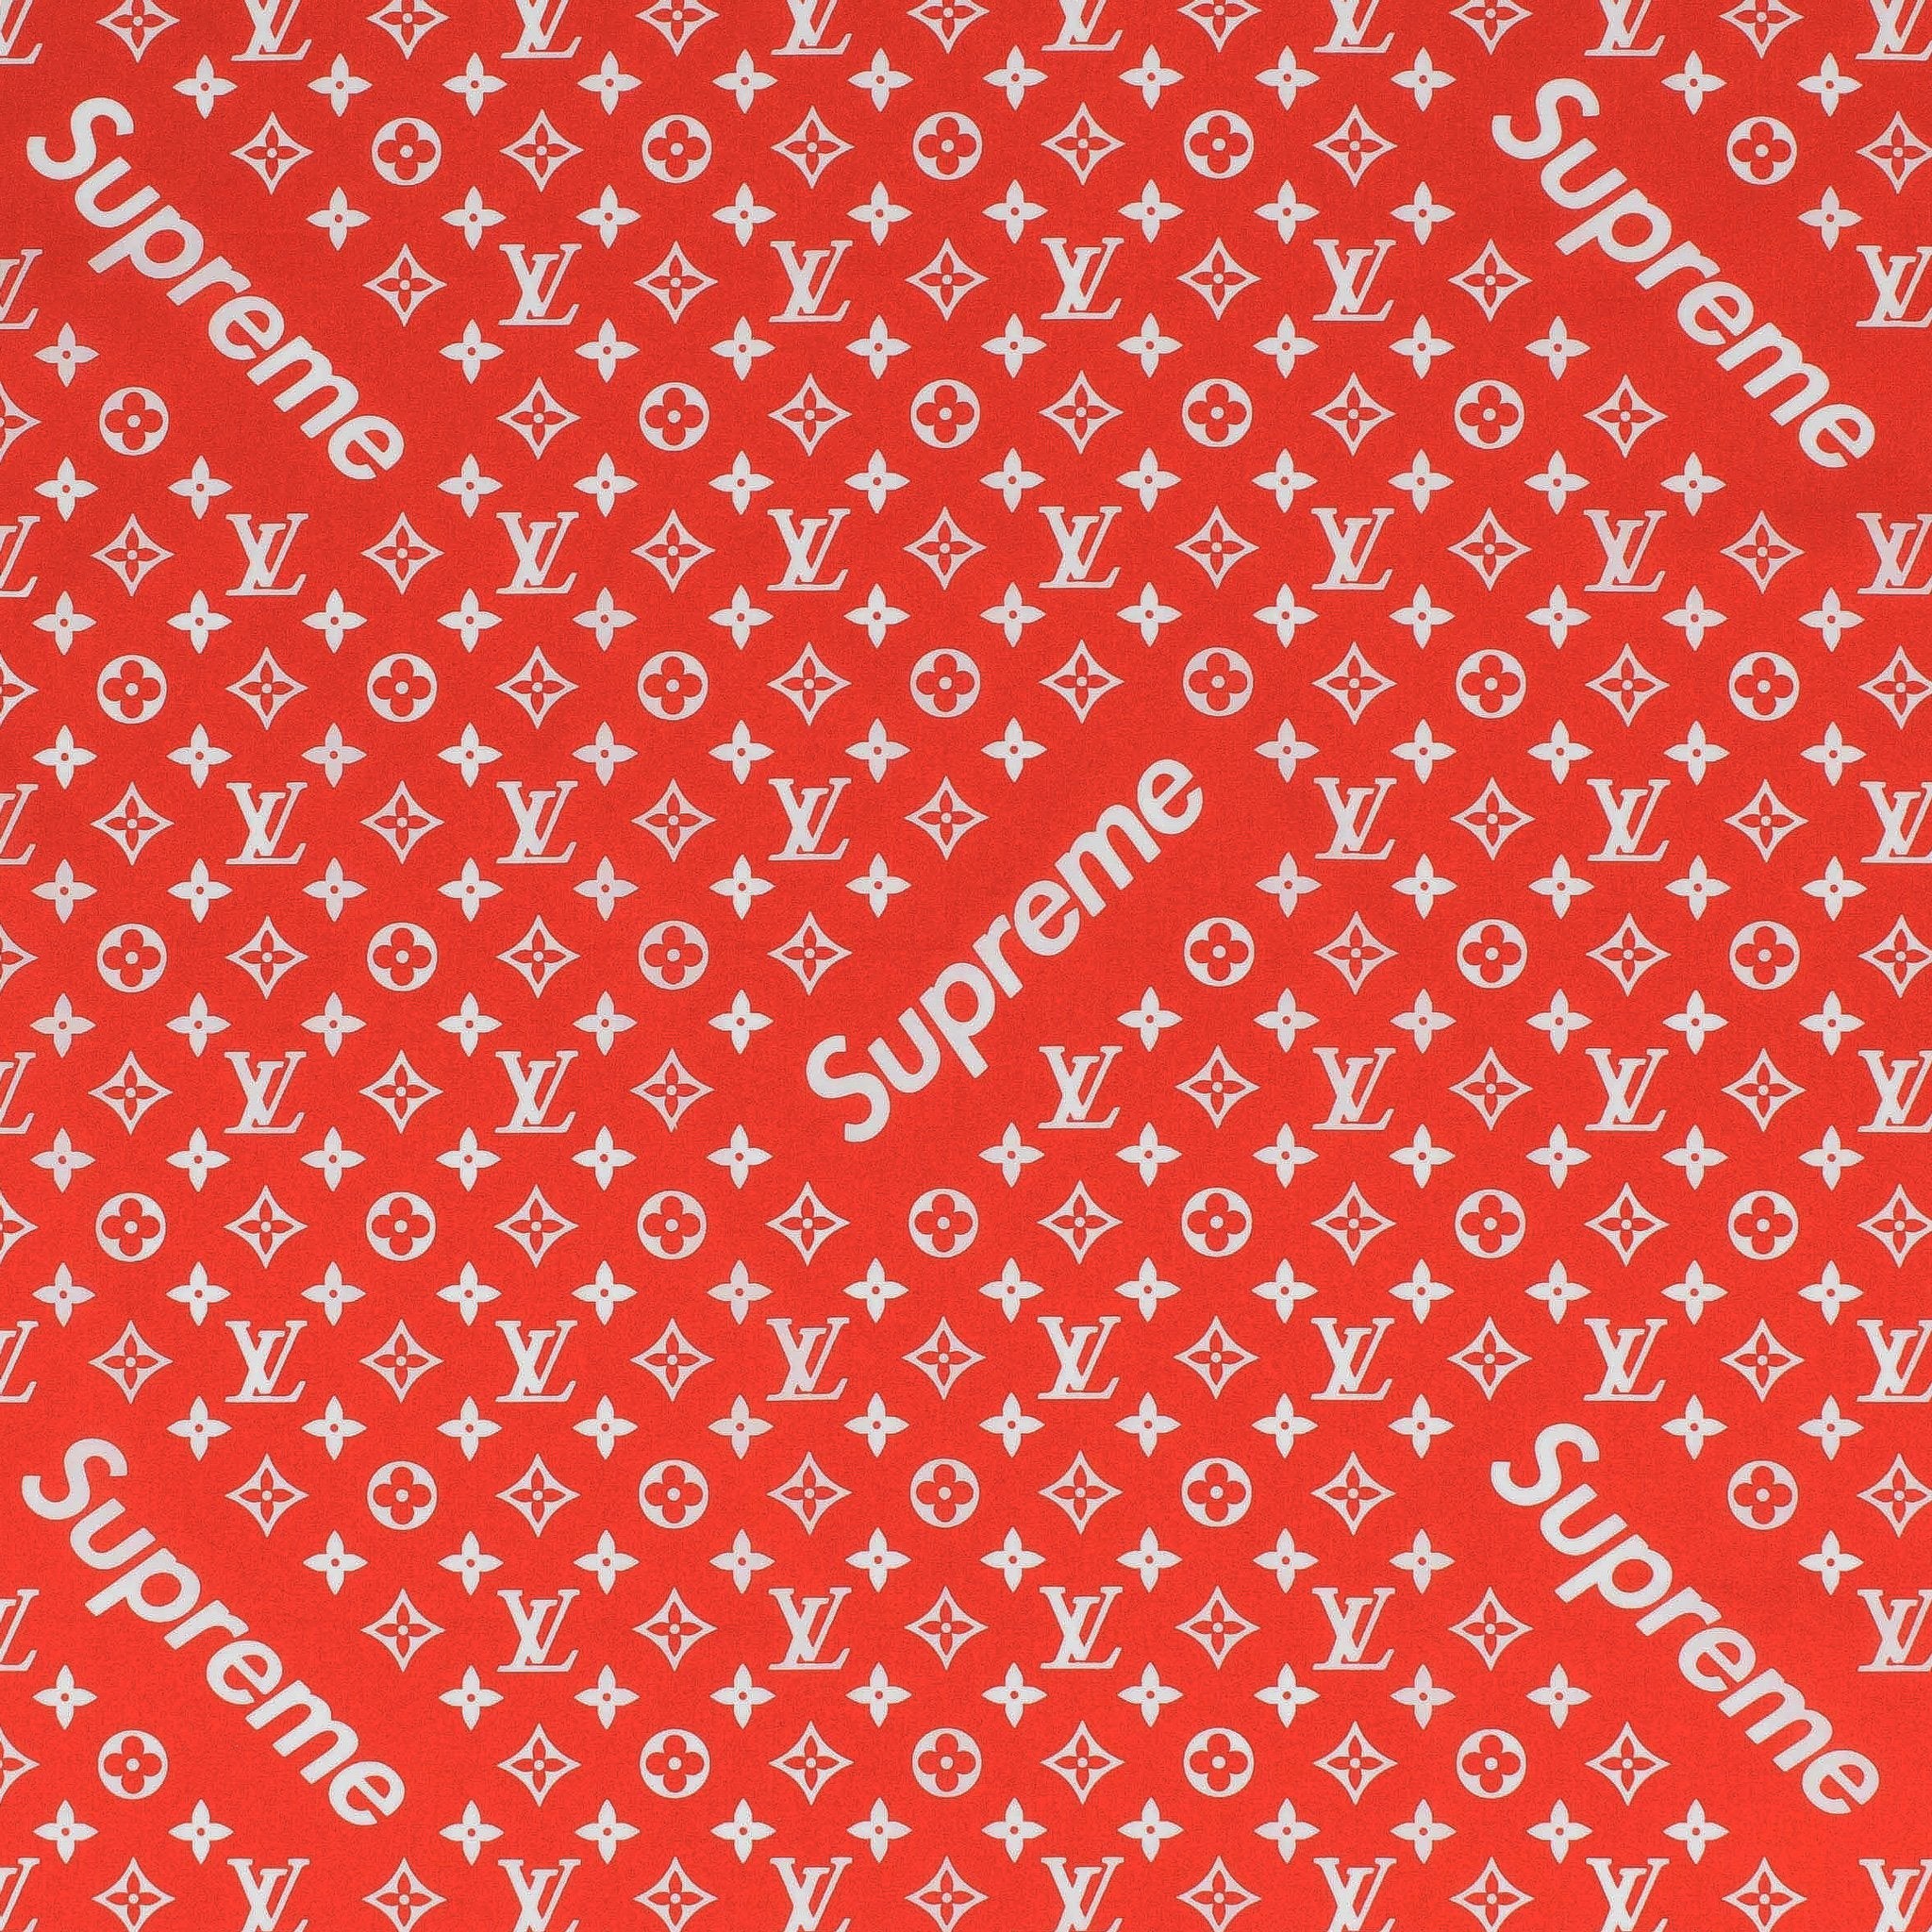 SUPREME/LOUIS VUITTON MONOGRAM BOX LOGO T-SHIRT, S/S 2017